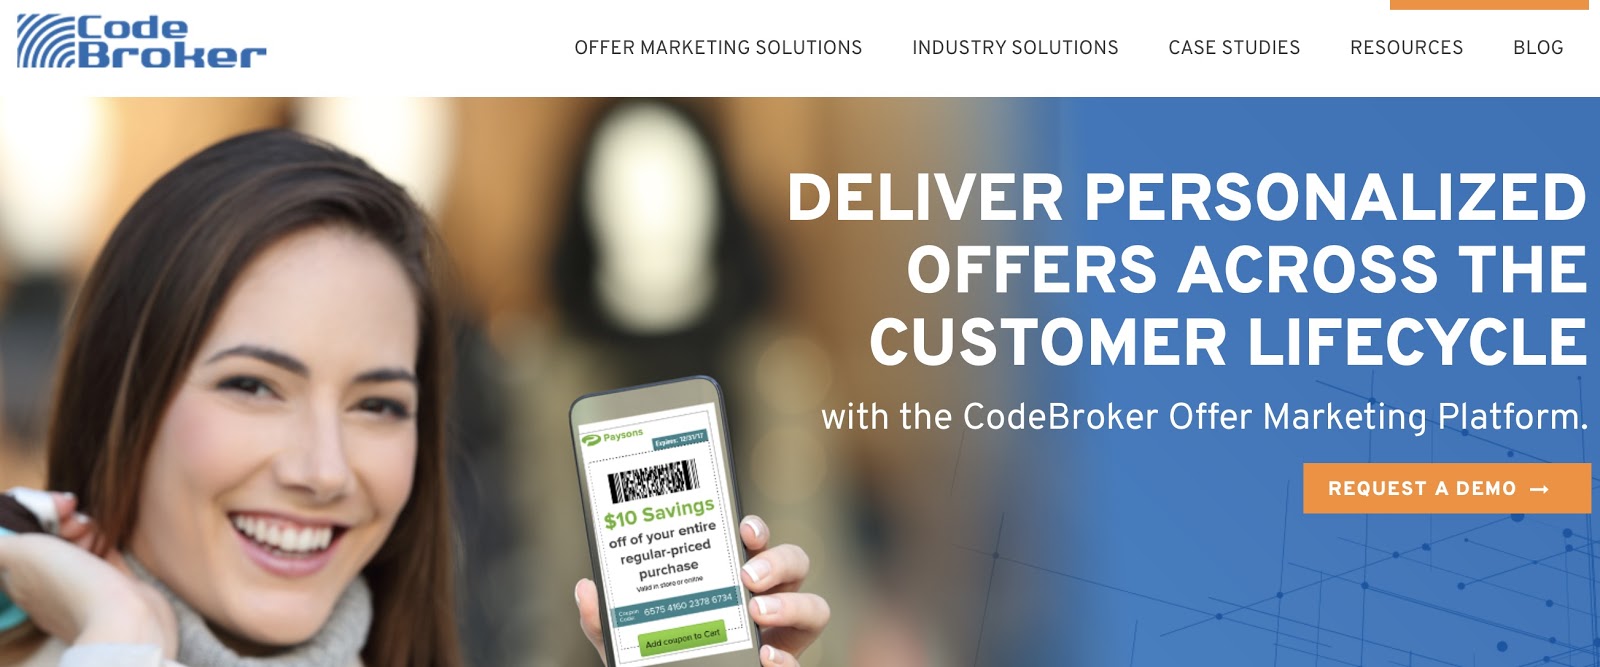 CodeBroker SMS Marketing